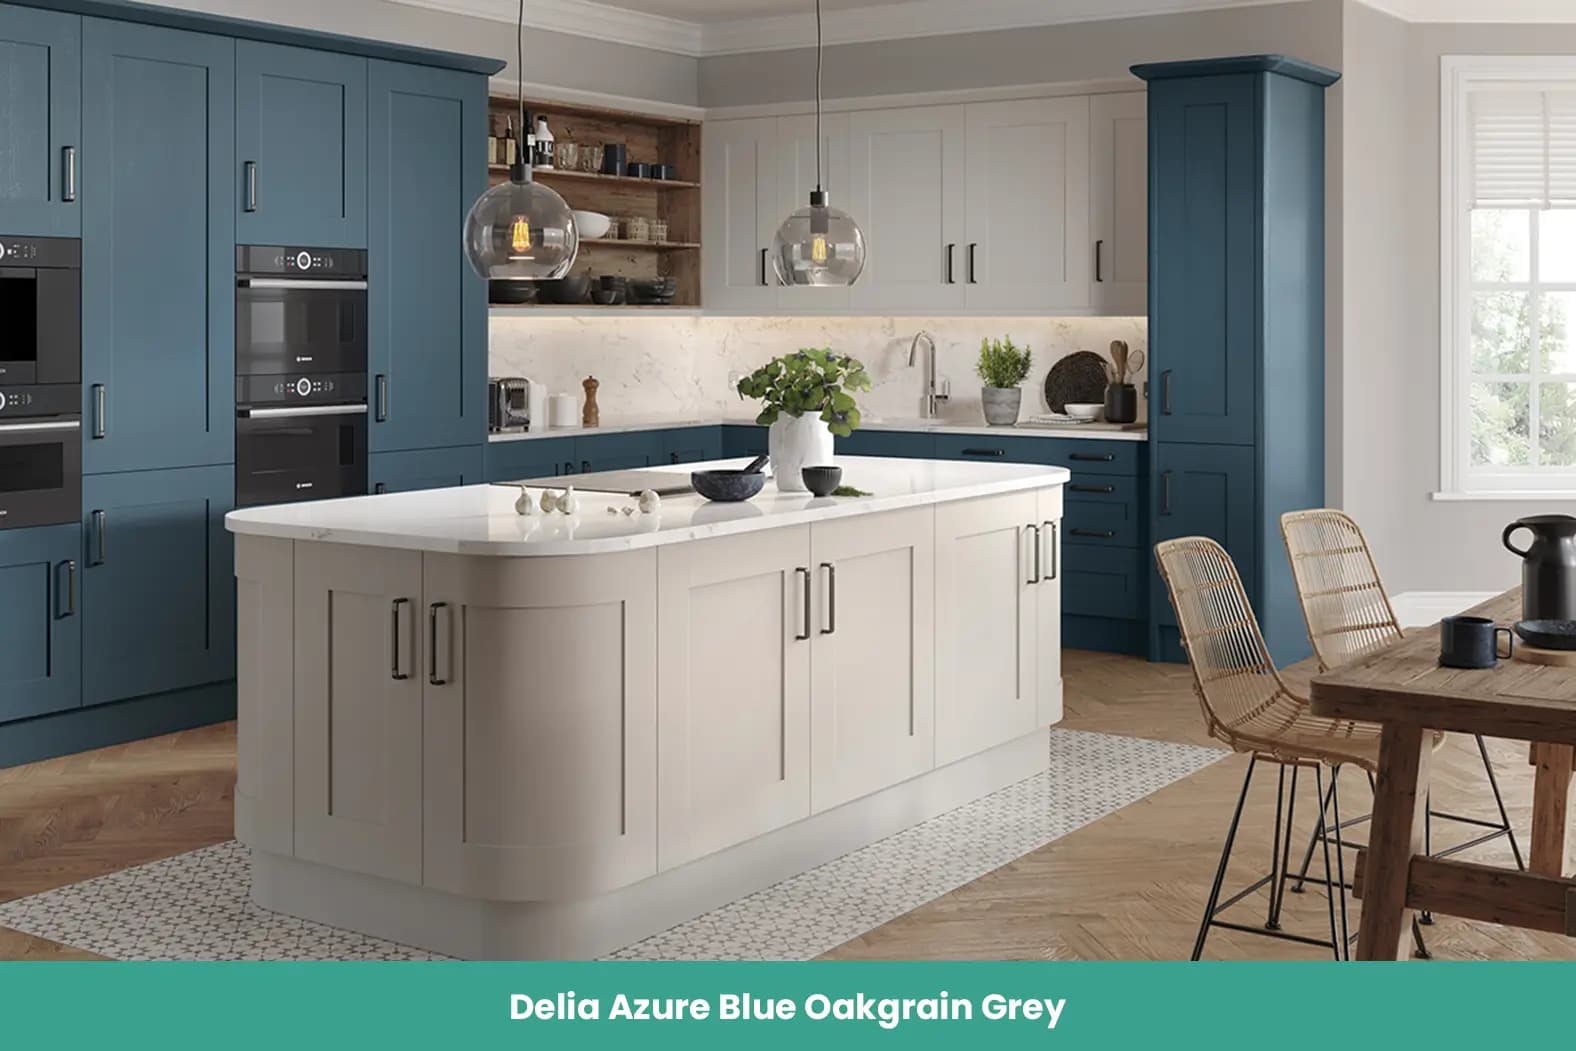 Delia Azure Blue Oakgrain Grey Kitchen